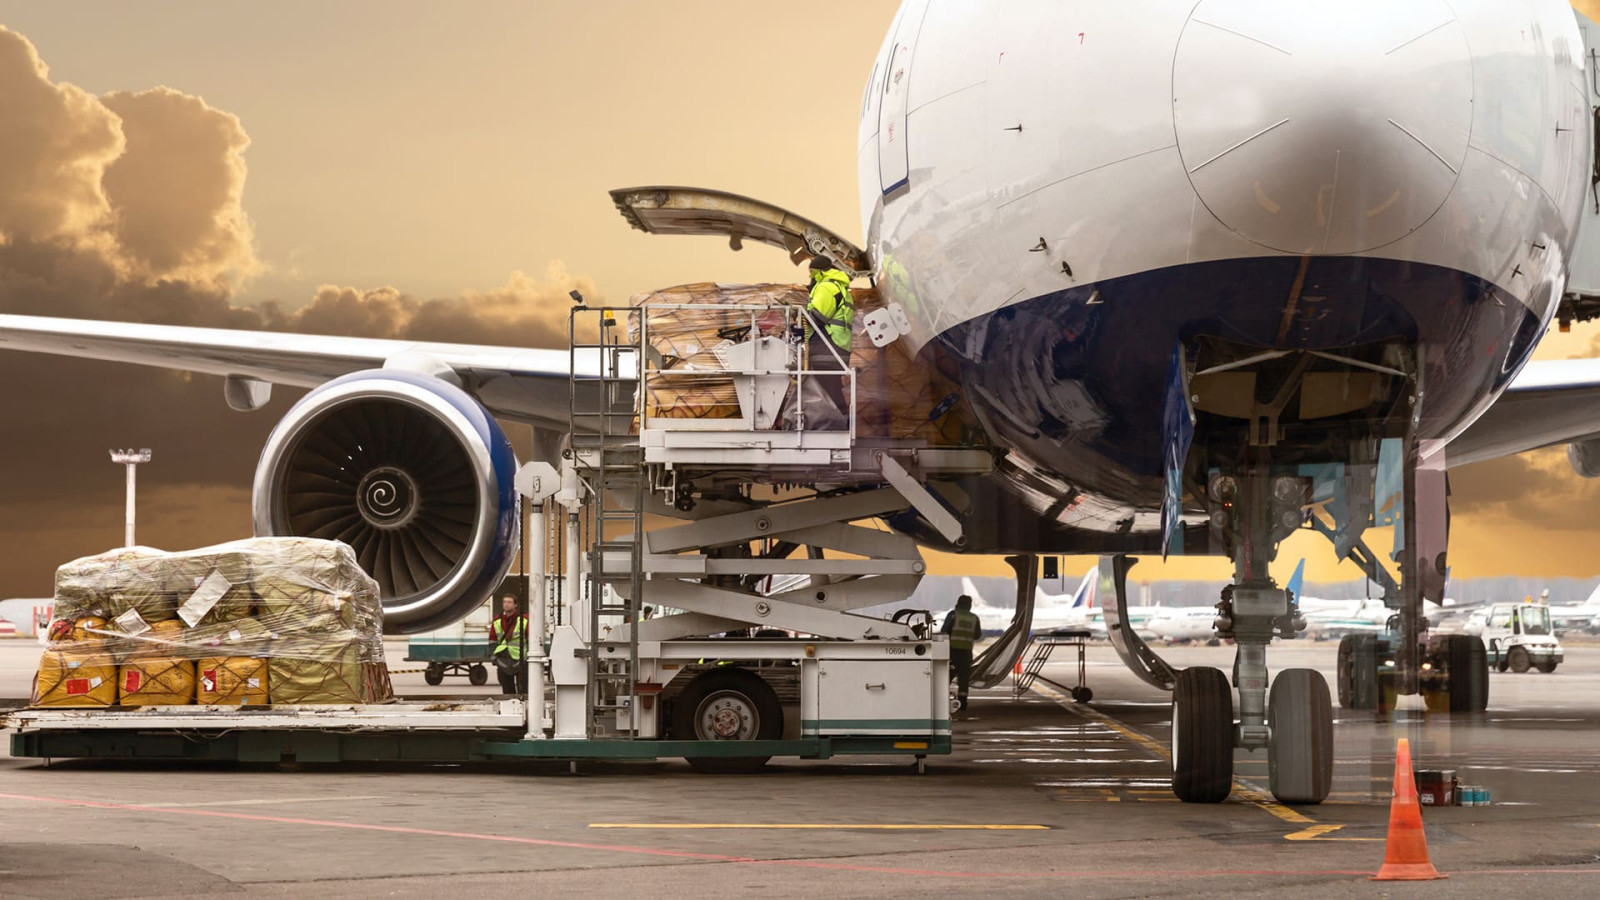 Transport lotniczy — czym jest i kiedy warto z niego skorzystać?